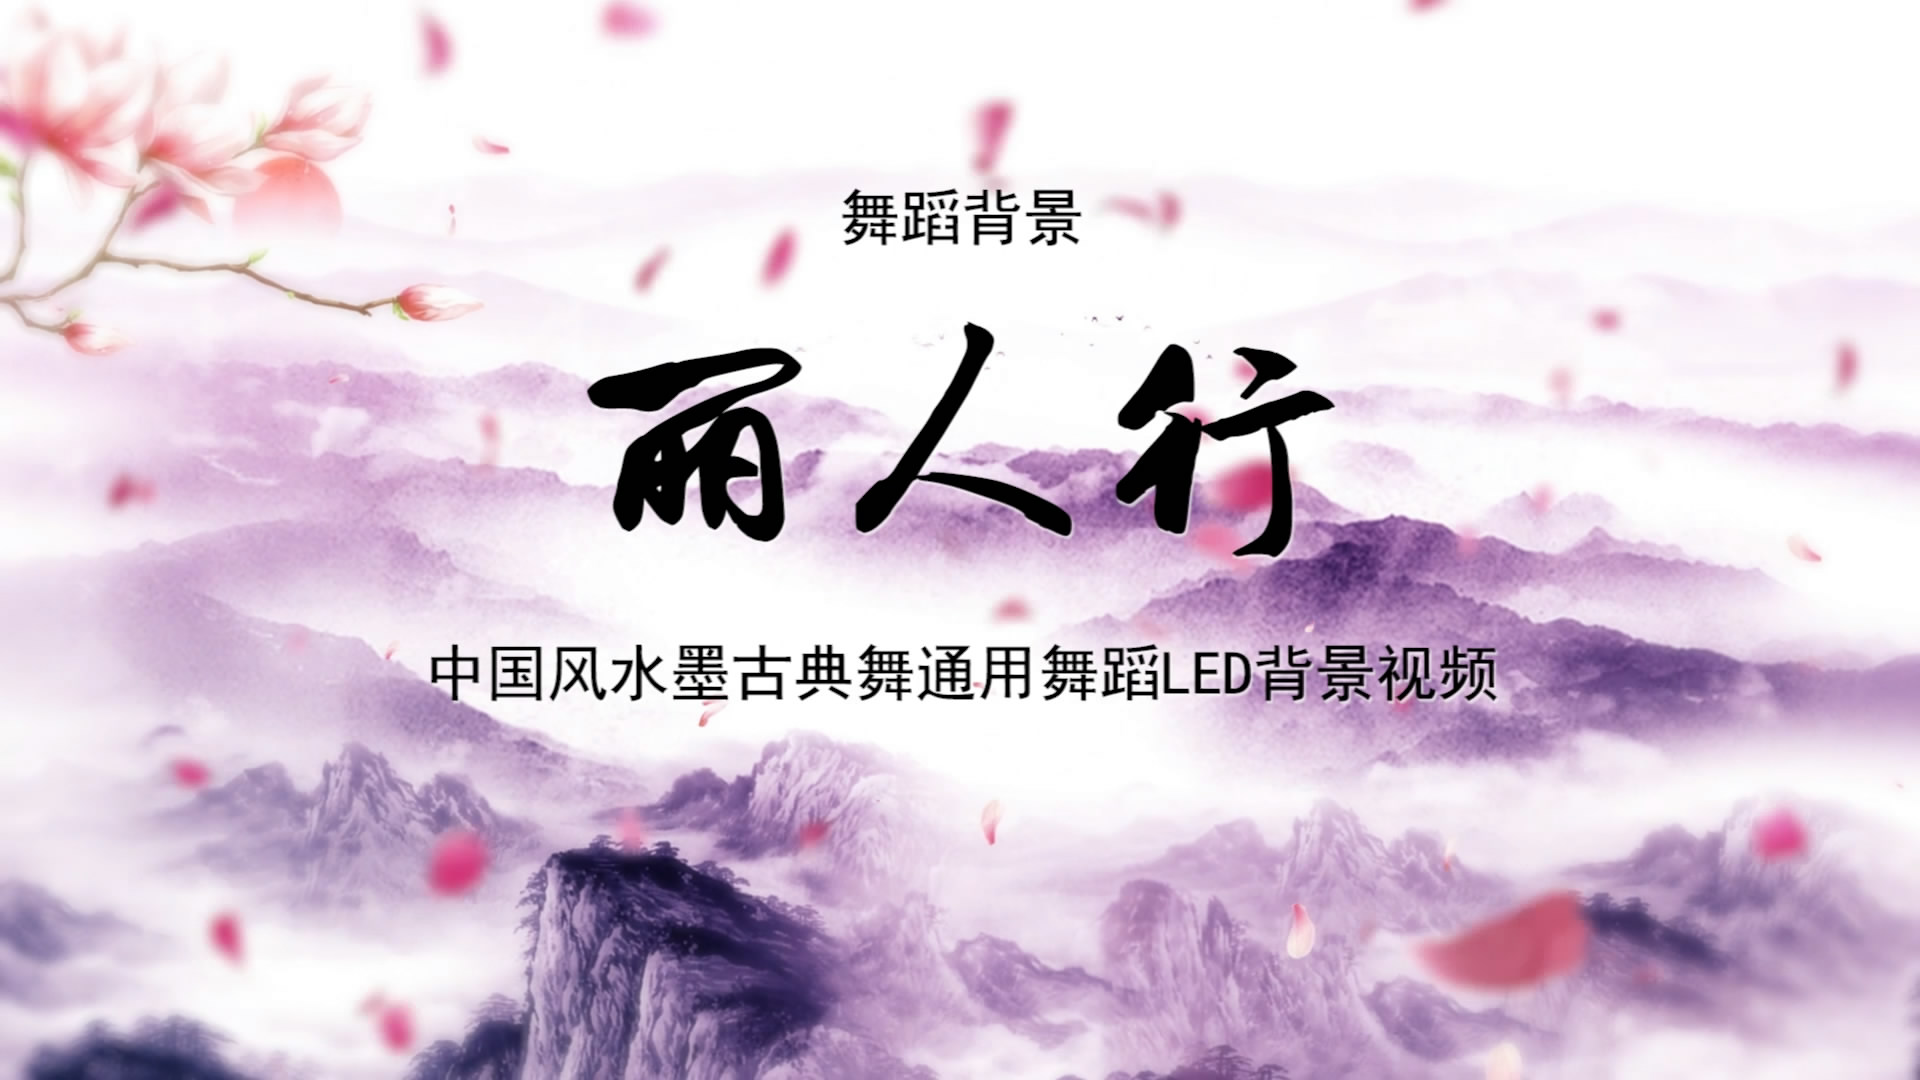 丽人行 古典中国风水墨歌舞晚会舞蹈节目LED背景通用大屏幕视频素材TV